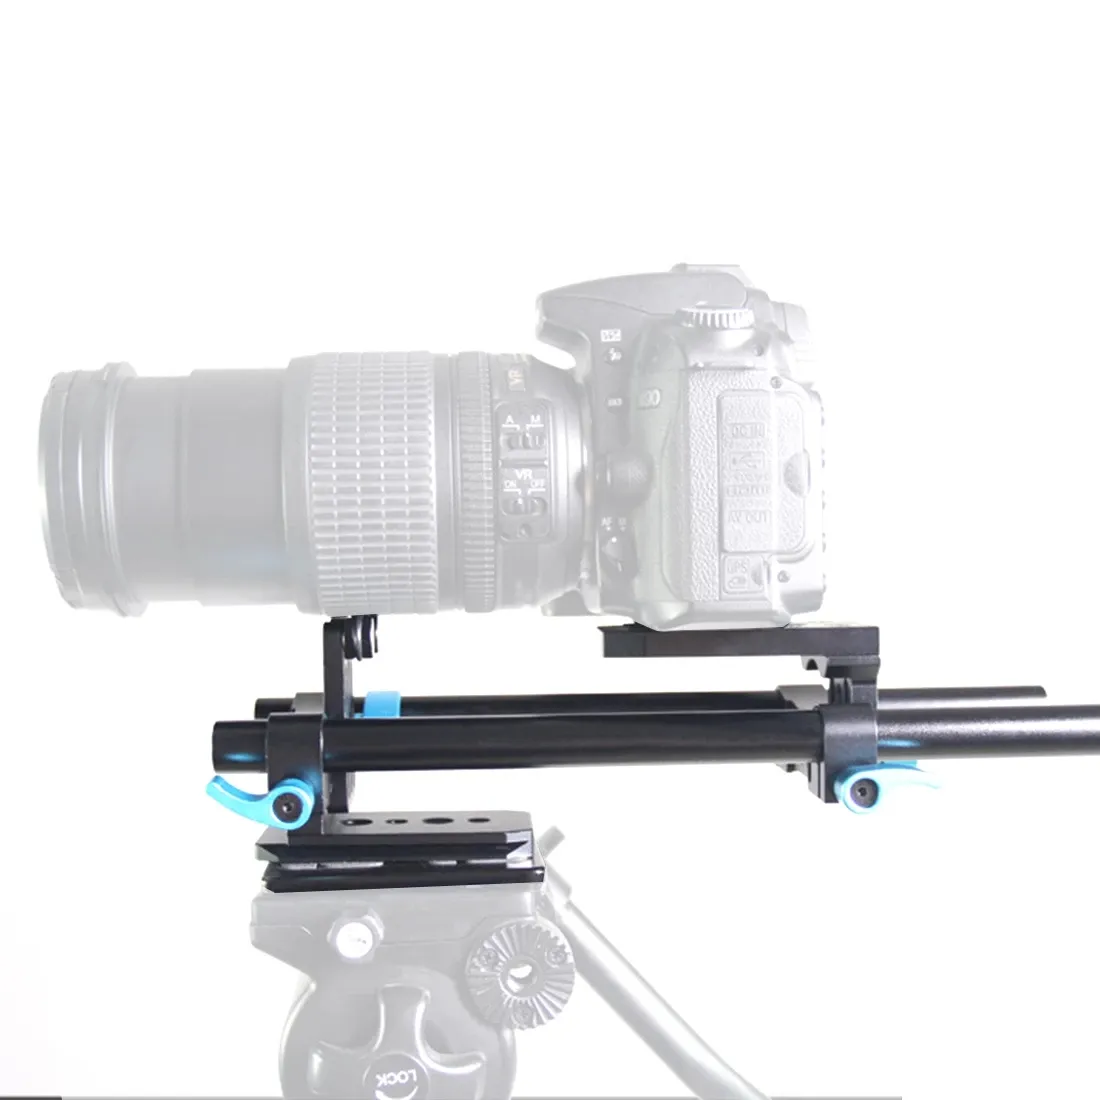 15 мм железнодорожная стержень системы поддержки системы видео стабилизатор дорожки ползунка базовая площадка 1/4 "винт быстрого выпуска для канона Nikon Sony DSLR камеры